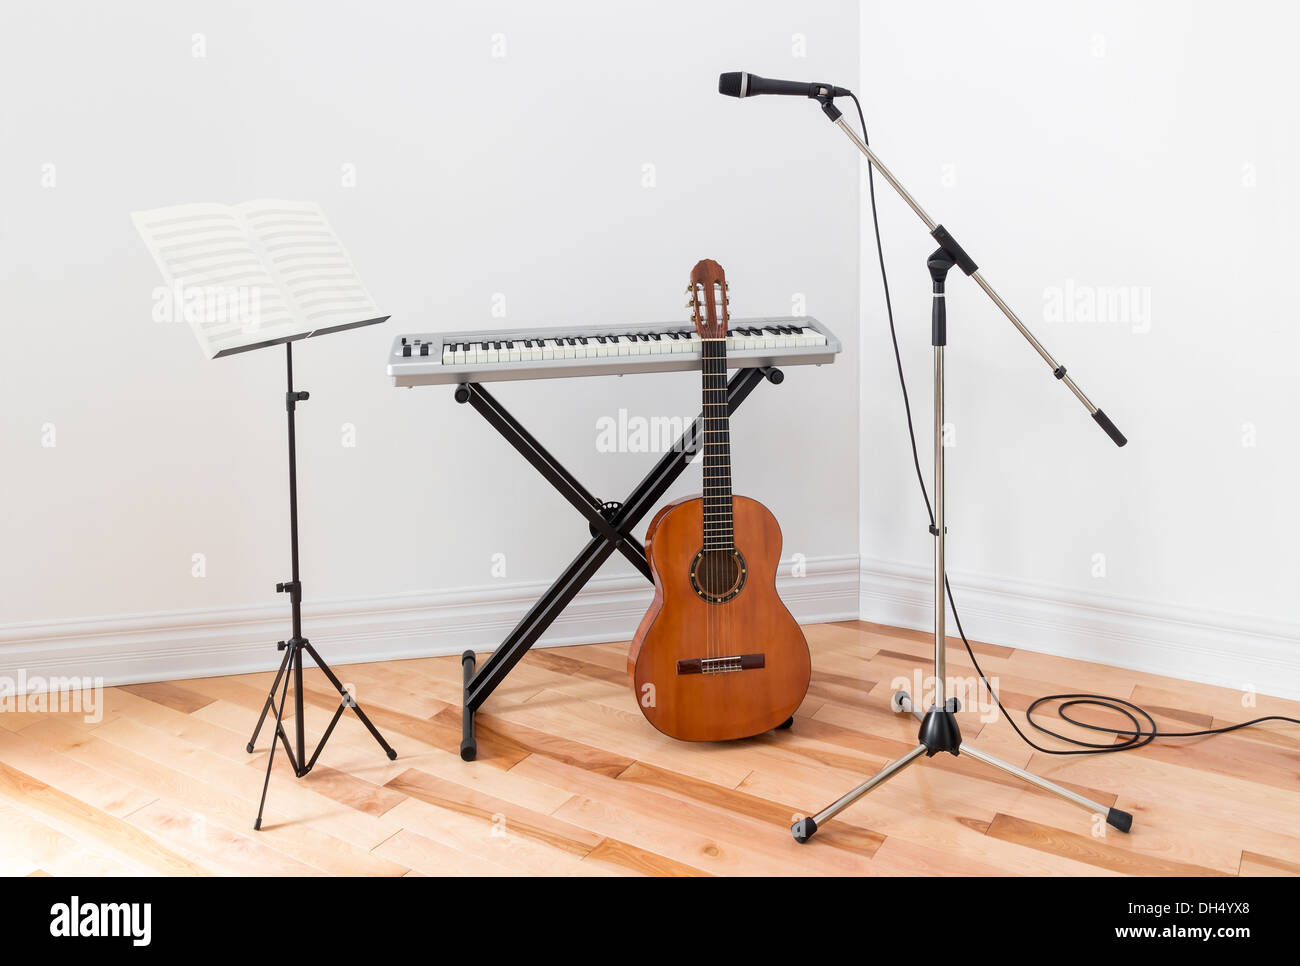 Strumenti musicali in una stanza. Piano elettrico, chitarra, microfono e stand con foglio di musica. Foto Stock